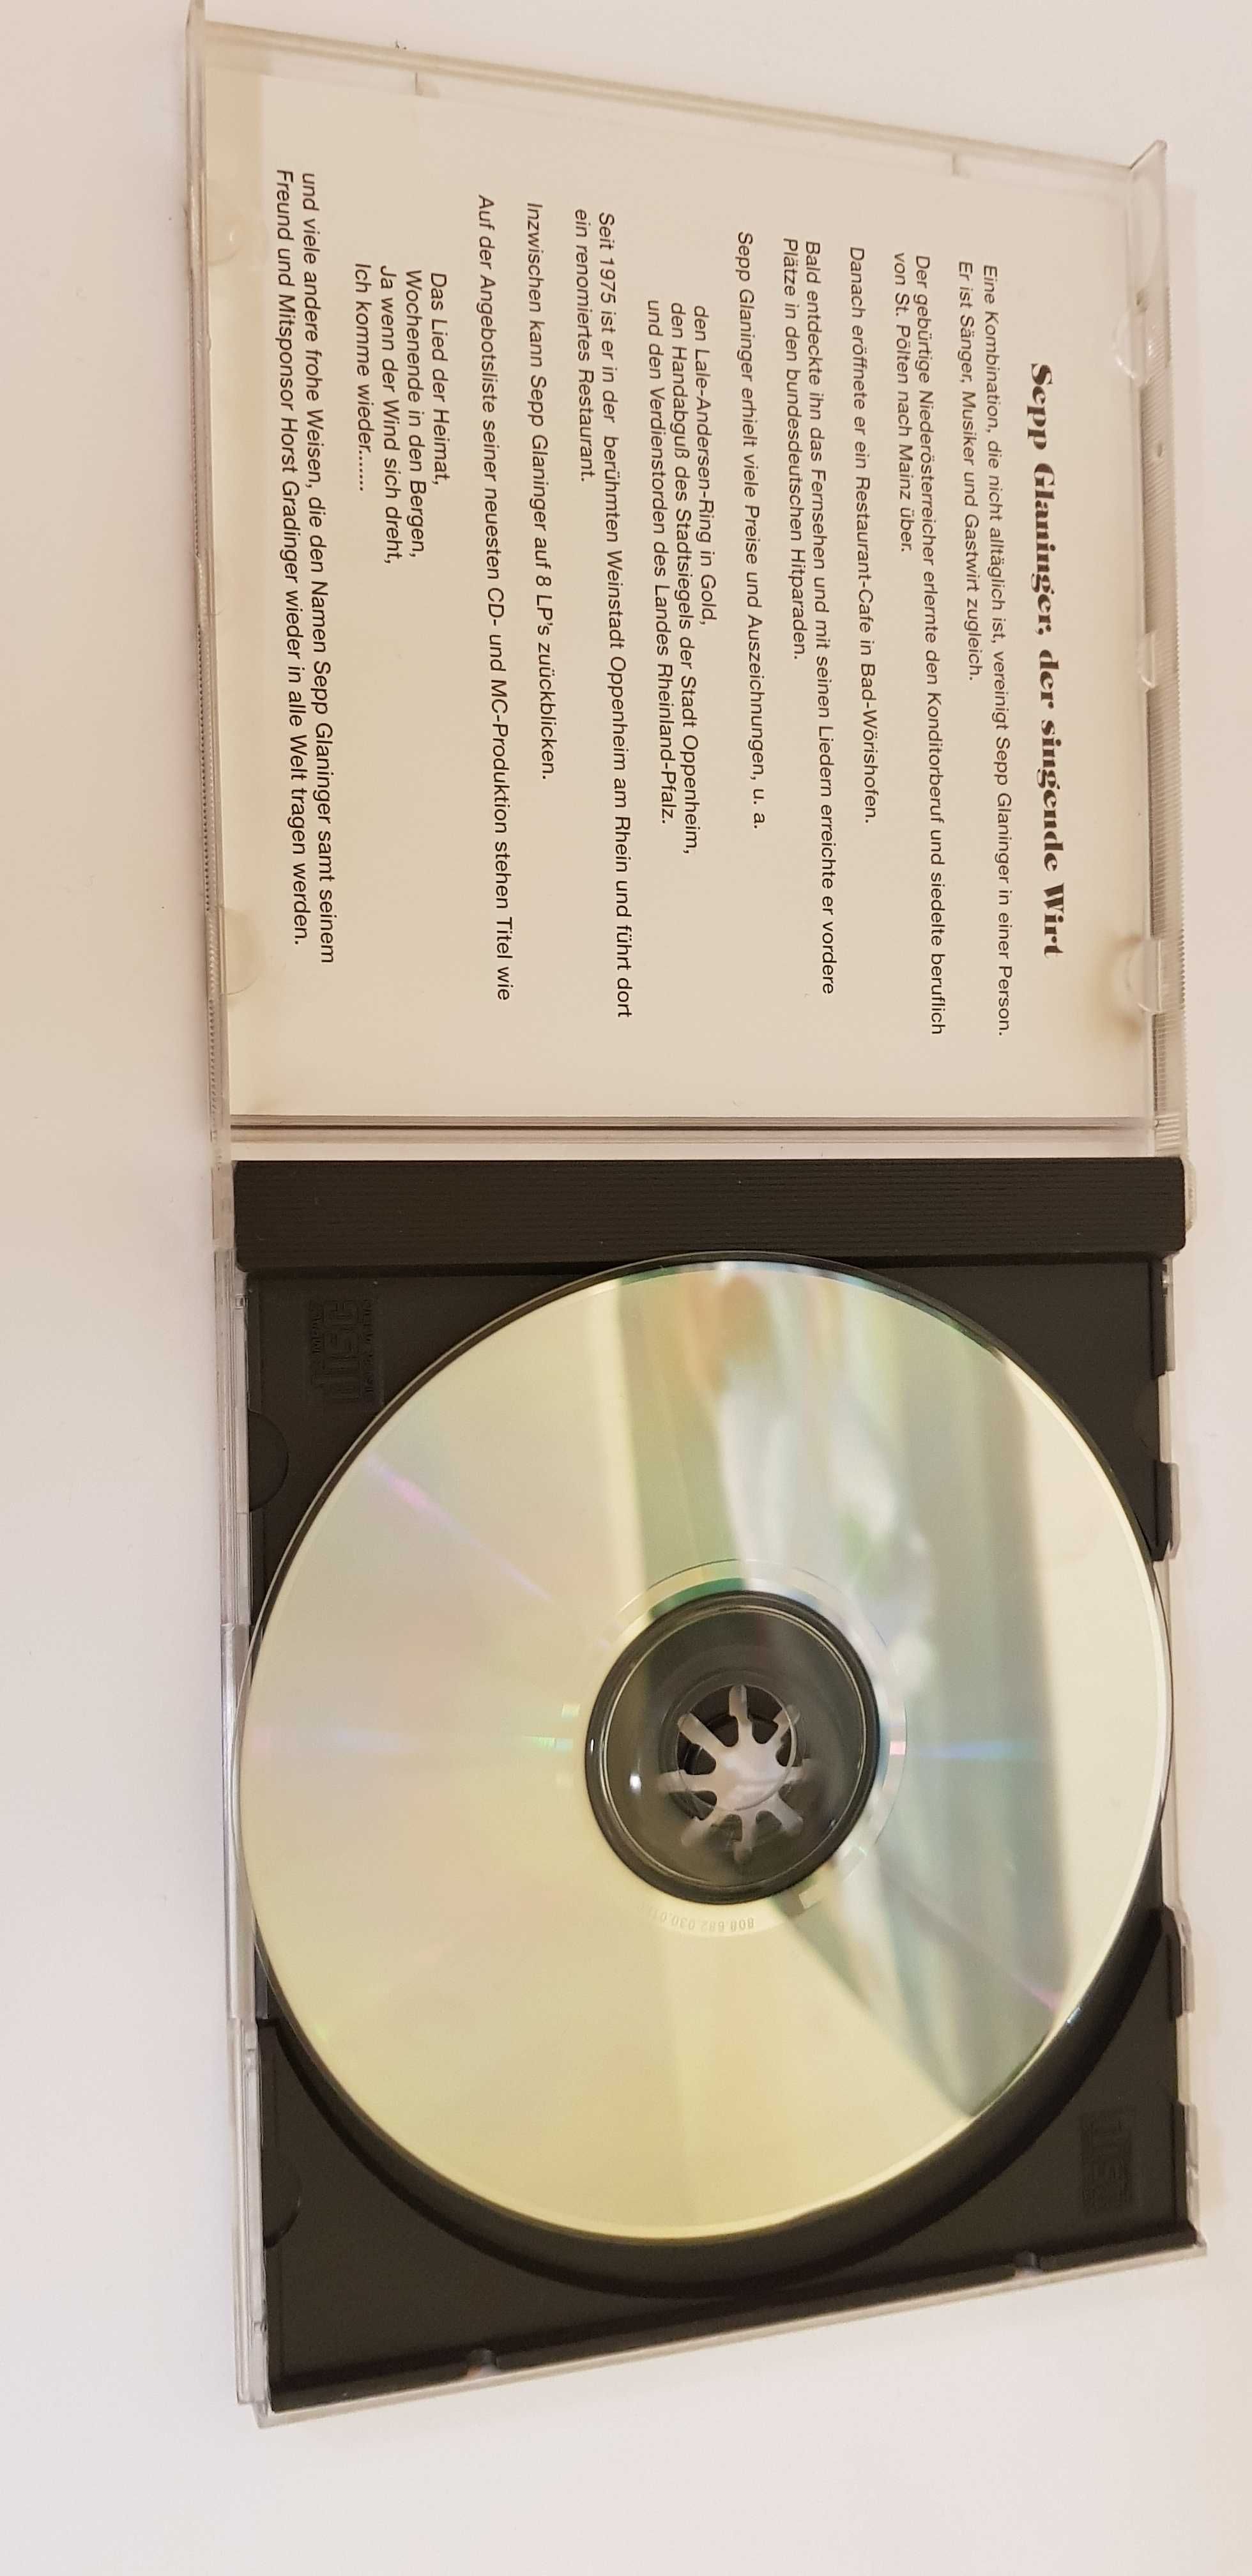 Sepp Glaninger - Das Lied der Heimat płyta CD